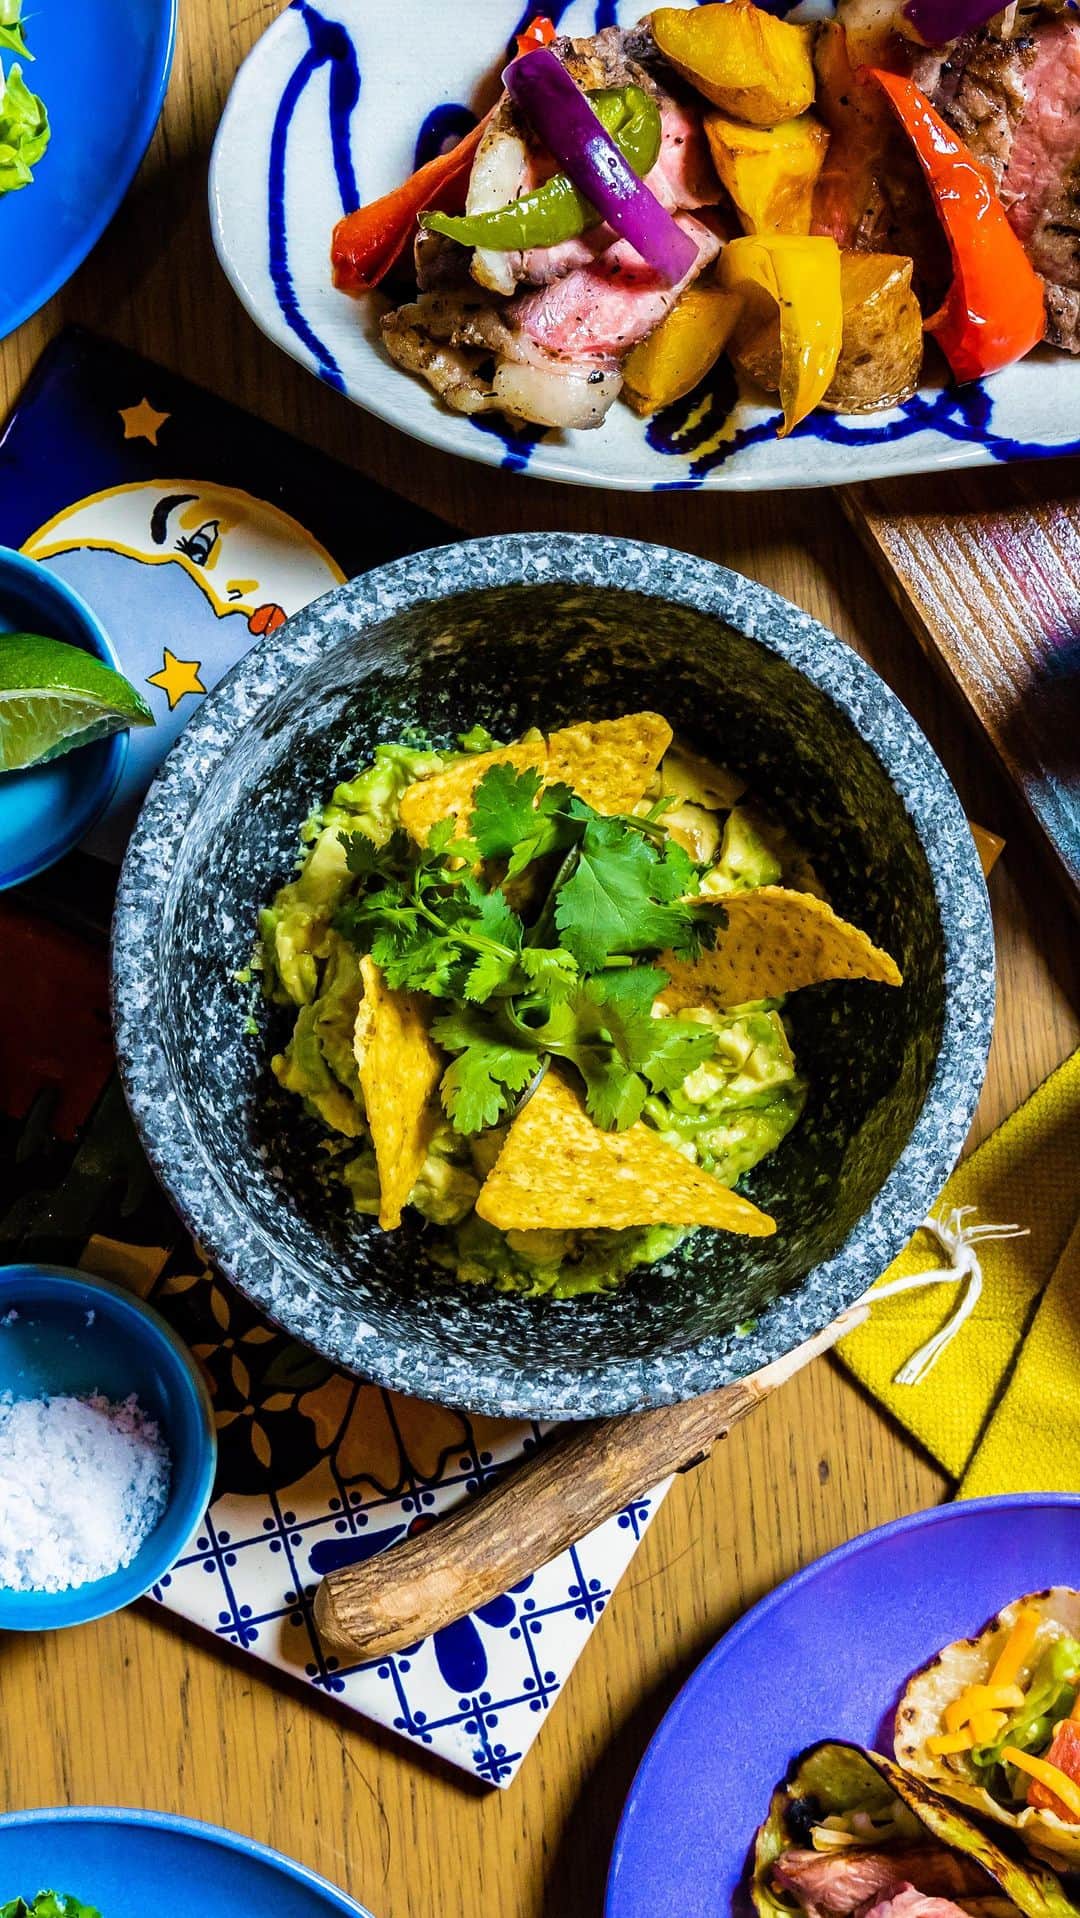 ESTINATE HOTELのインスタグラム：「気になる、食べたい人はぜひコメント欄に"🥑"残してね〜😋  スタッフが目の前に仕上げるワカモレを楽しんで食べていただける！オリジナルワカモレを味わえる至福のひととき✨   🥑 Enjoying freshly prepared guacamole made by our staff right in front of you🏝️ A blissful moment to savor your own original guacamole ✨ #RyukyuMexican #CreateYourOwn  😋享受我們員工當面為您製作的新鮮酪梨沙拉！一個幸福的時刻，品味您自己的原創酪梨醬 ✨ #琉球墨西哥料理  ——⁠ ESTINATE HOTEL NAHAは、旅の次が見つかるカジュアルホテルです！👉@estinate_hotel_naha  『旅は不完全なほどおもしろい、 旅の計画には余白を。 それは、あなたの旅が素晴らしい体験になる第一歩』  #estinatehotel #estinatelounge #livelyhotels  #LIVELYHOTELS #ライフスタイルホテル ⁠ #デザインホテル #おしゃれホテル #ホテルライフ #ホテルステイ #旅の思い出⁠ #japanhotel #lifestylehotel #designhotel #traveljapan #discoverjapan #naha#okinawatrip#okinawalife#okinawalifestyle#那覇#沖縄旅行#沖縄日常#沖縄行きたい#ワカモレ#メキシカン」